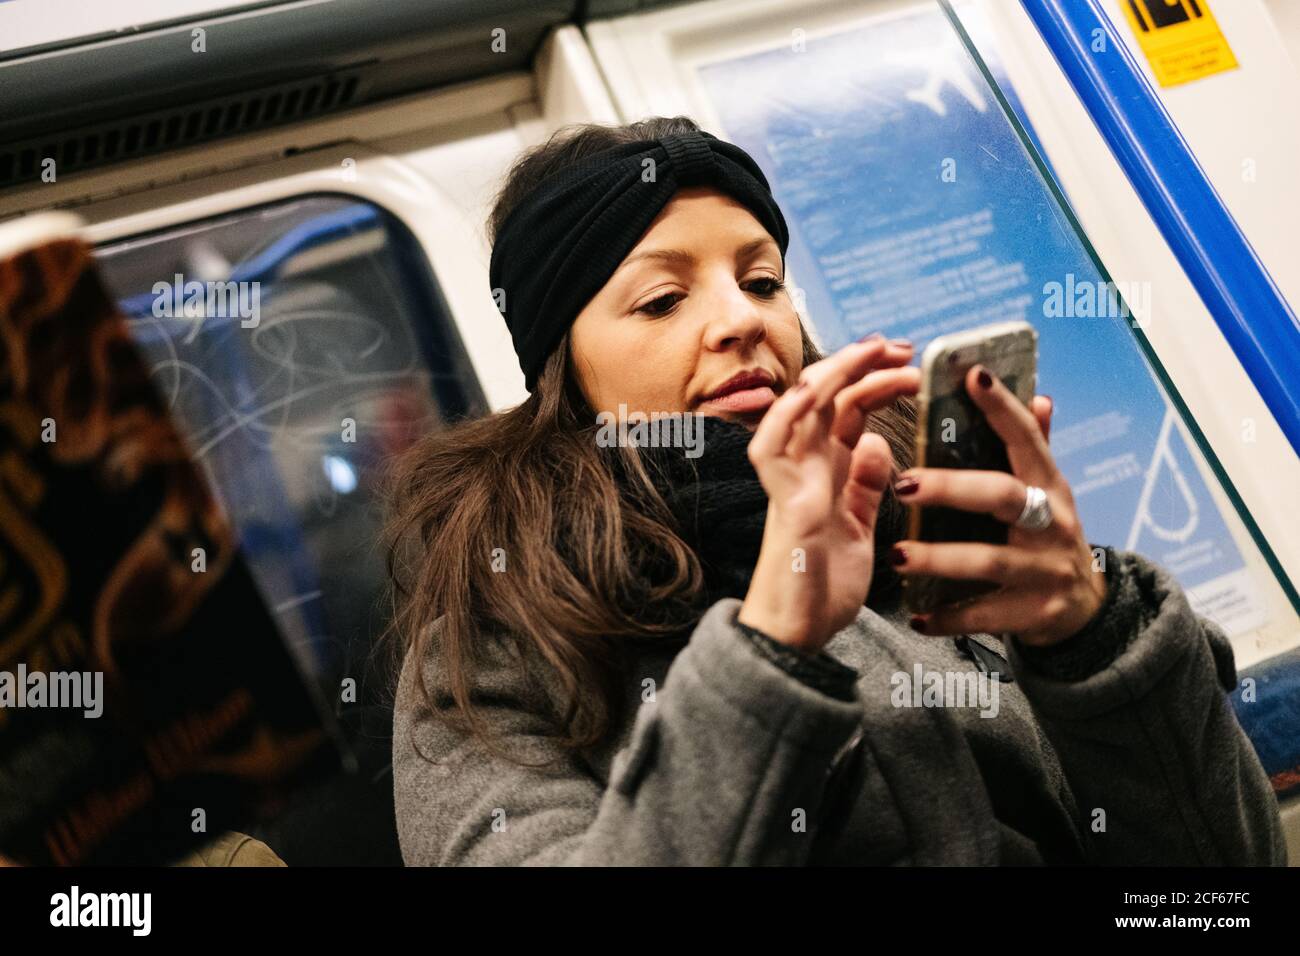 Niedrige Winkel der Dame in lässigem Outfit lächelnd und browsing Smartphone während der Fahrt Zug in U-Bahn in London, Großbritannien Stockfoto